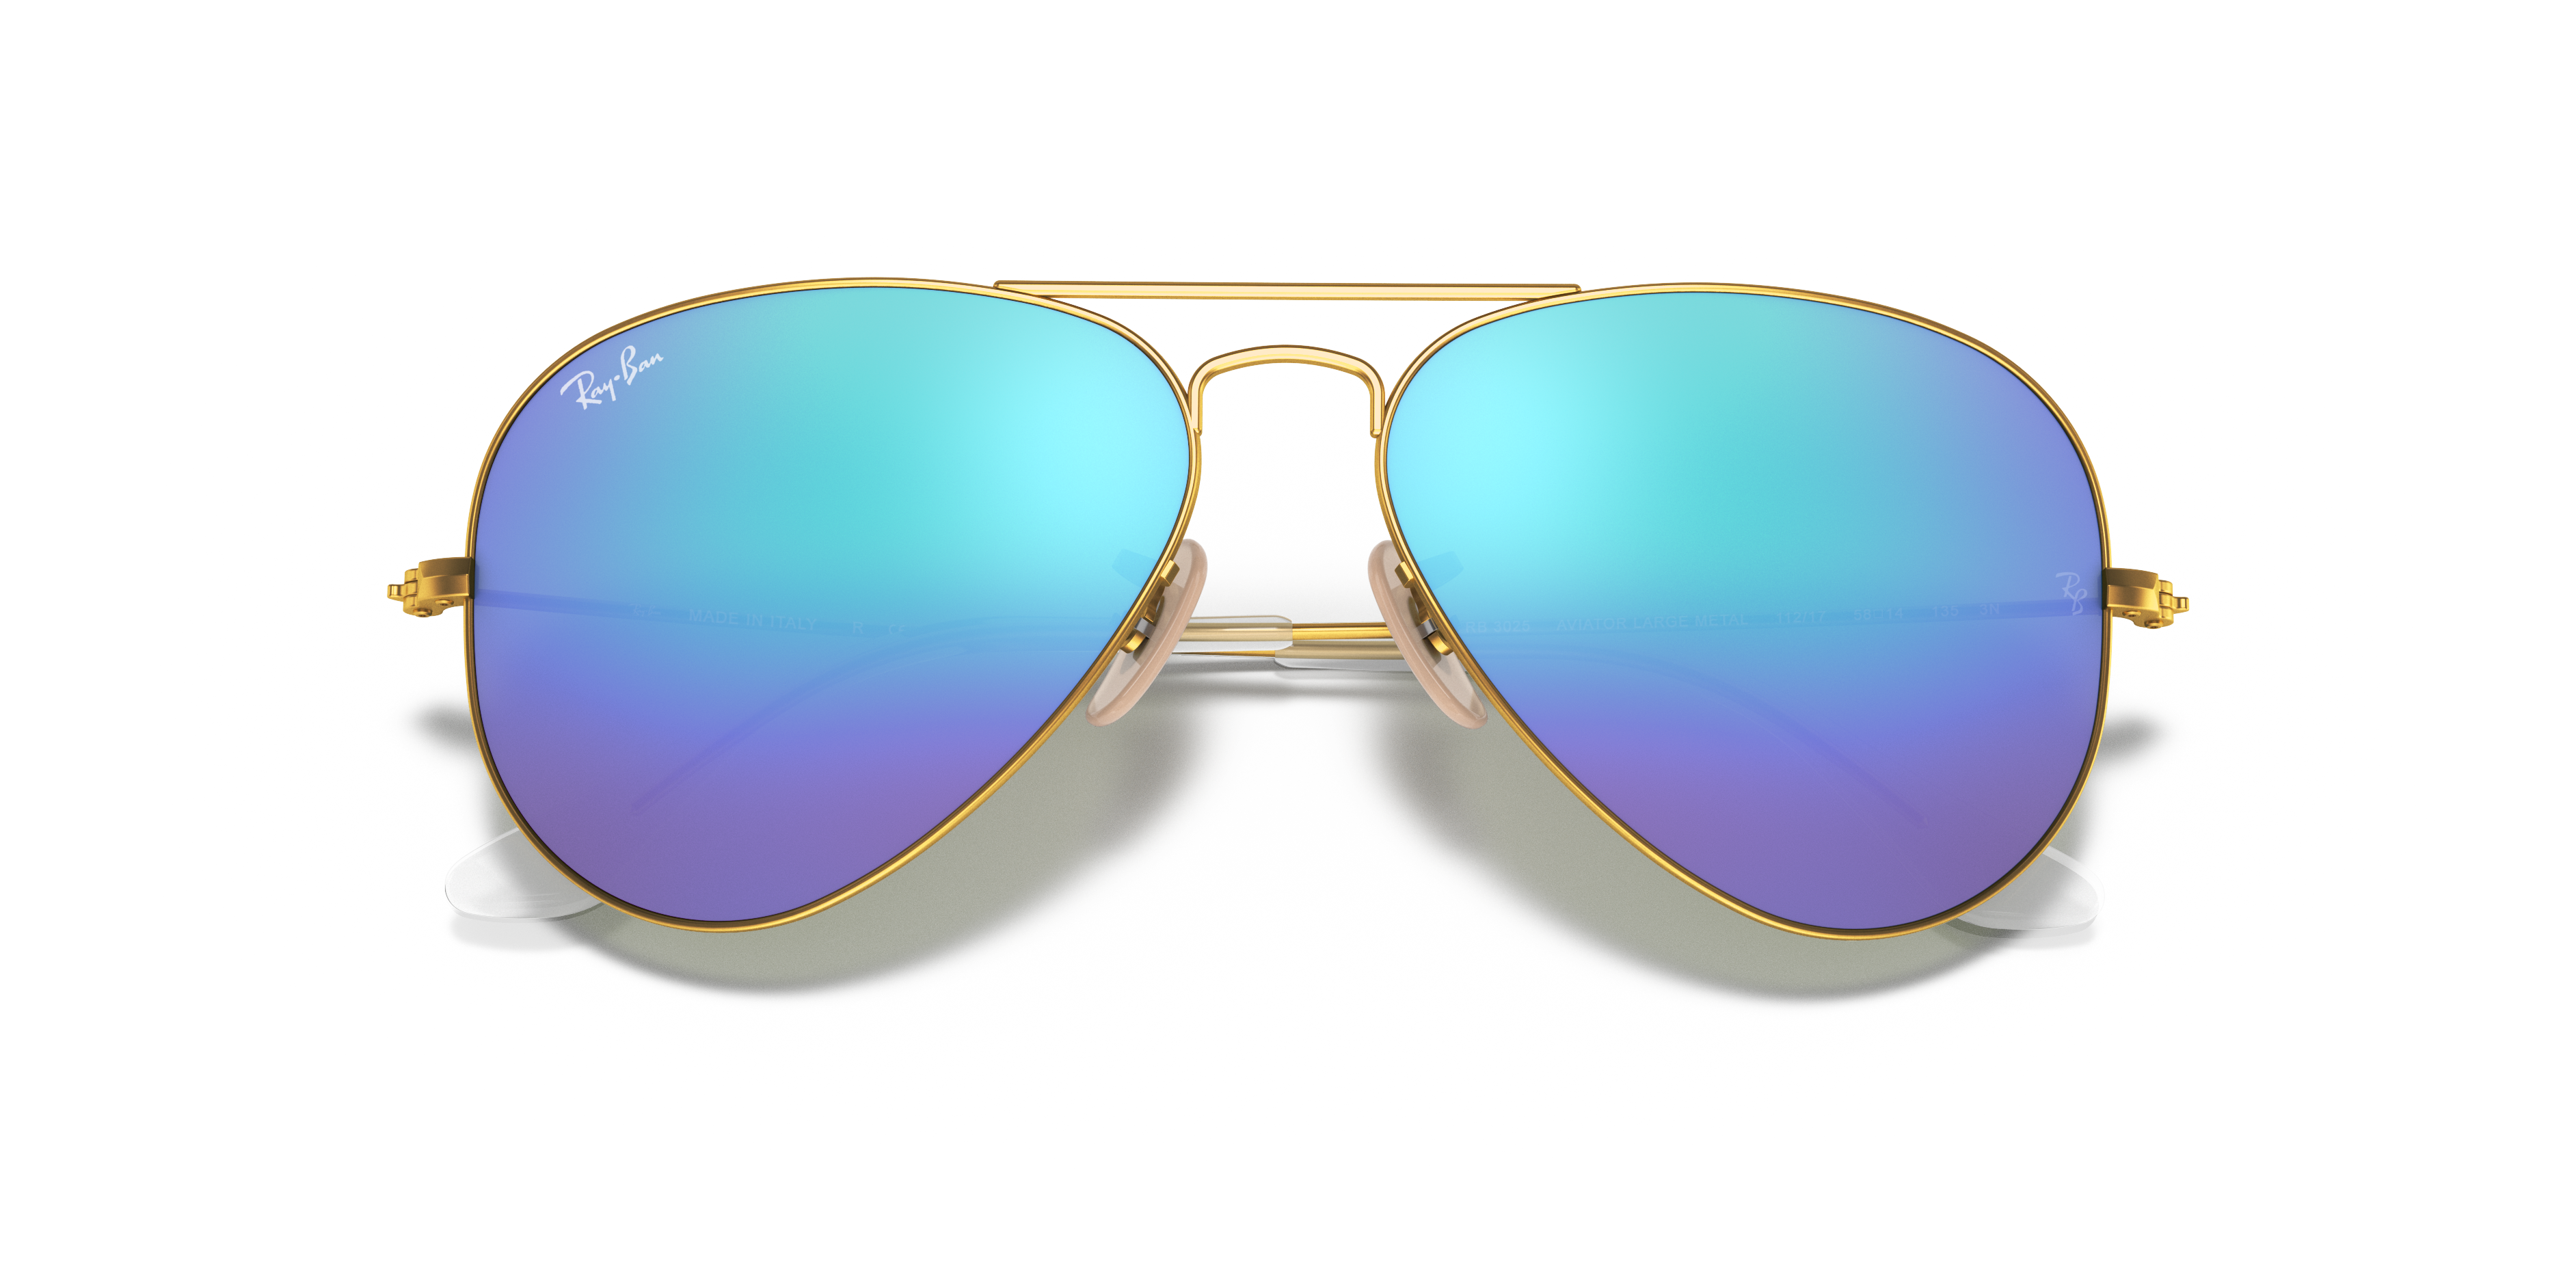 New Aviator Hangover Style Sunglasses Skiing Blocker HD Amber Yellow Blu Lens 